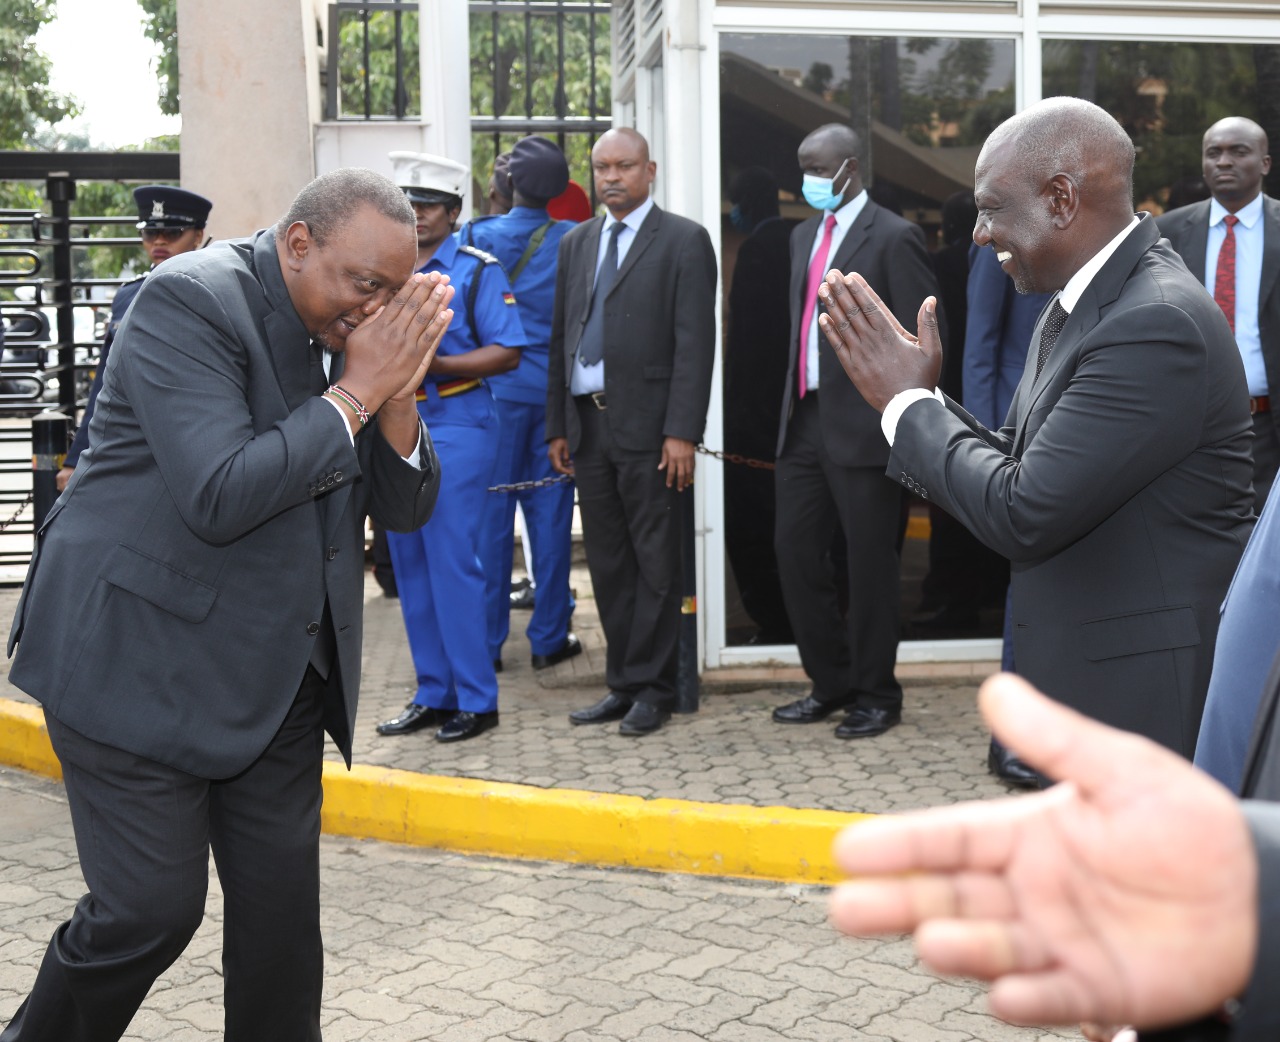 Uhuru avoids Ruto’s handshake as they meet for Kibaki’s body viewing